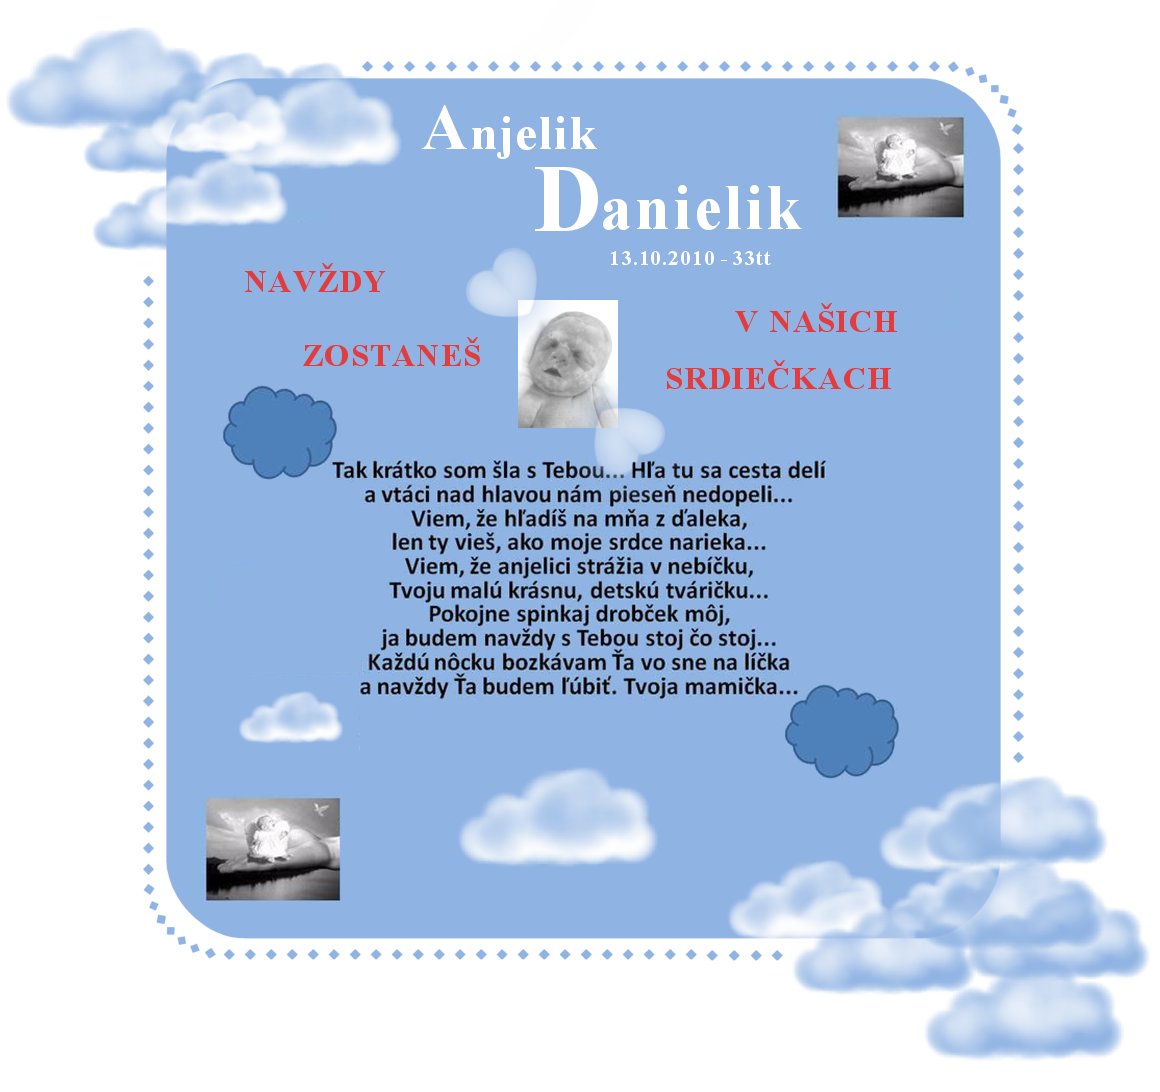 Anjelik Danielik